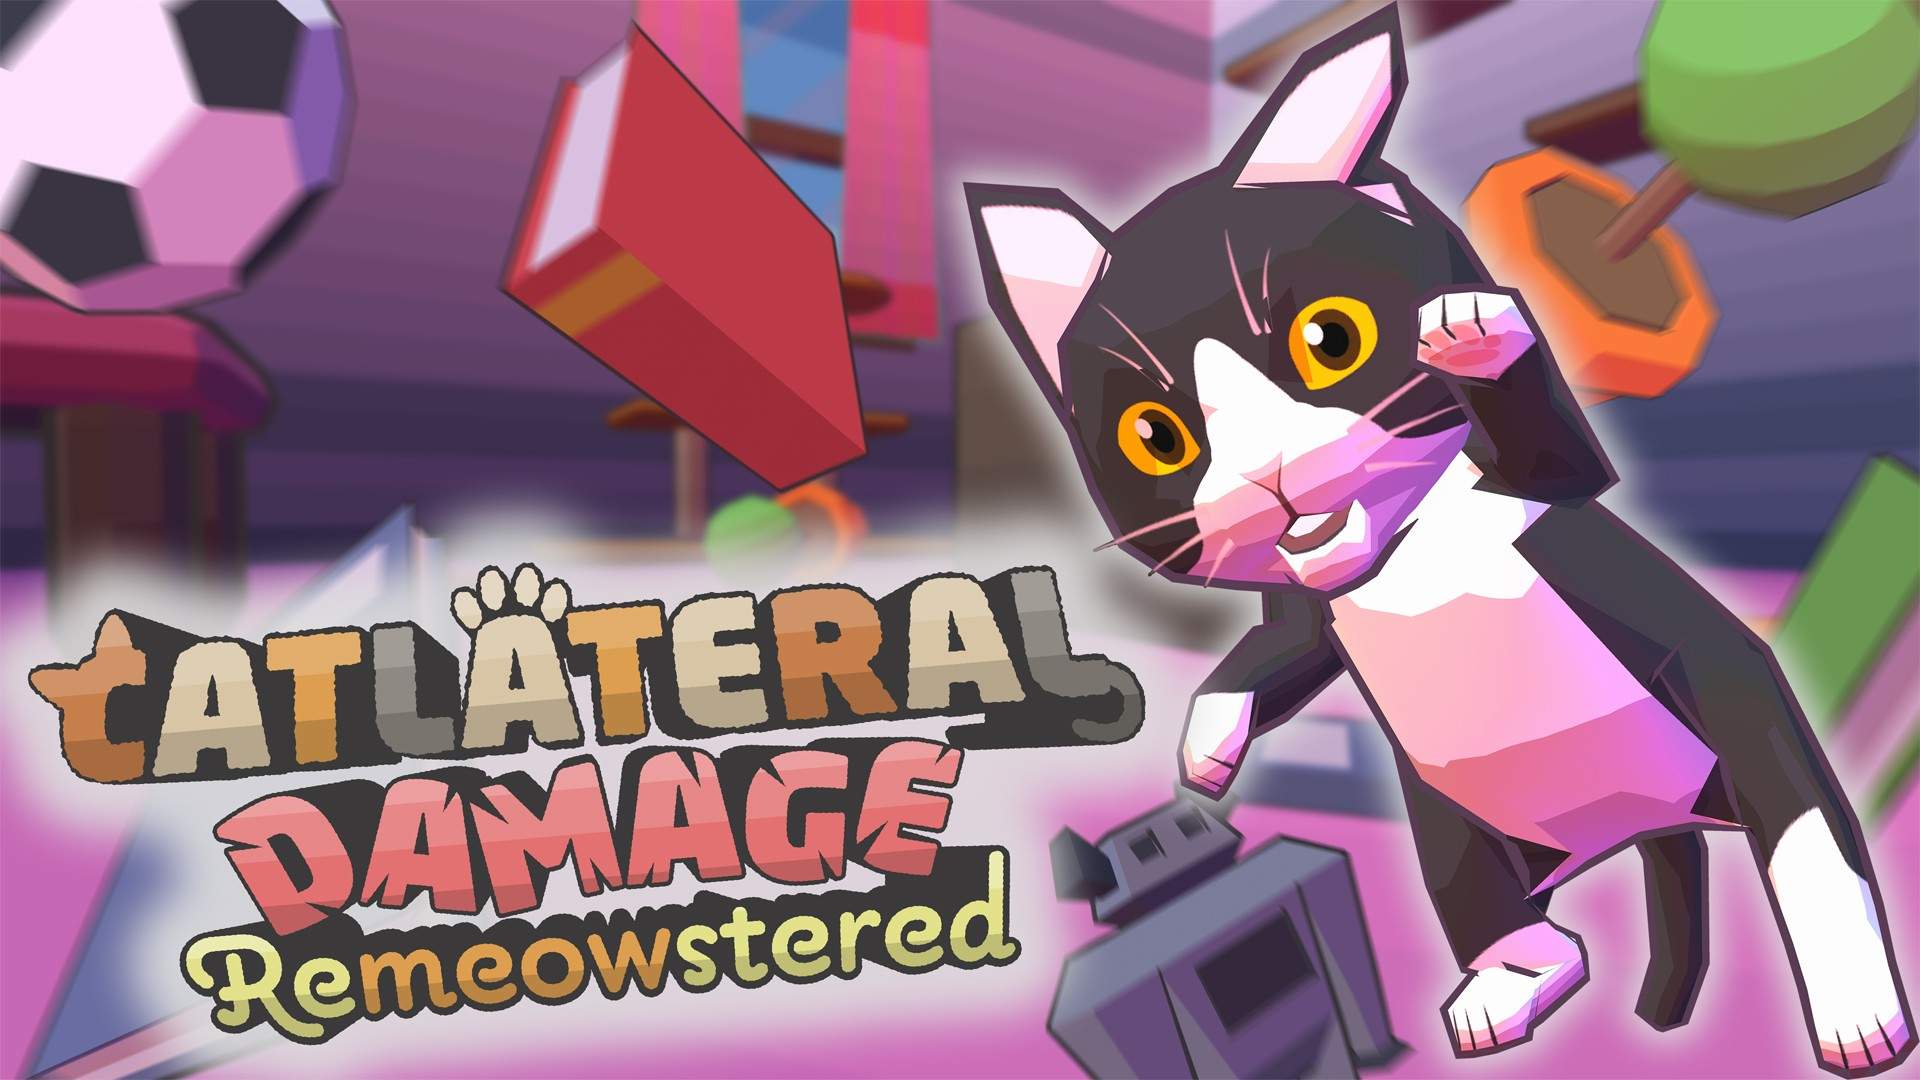 Il videogioco Catlateral Damage: Remeowstered per gli amanti dei gatti